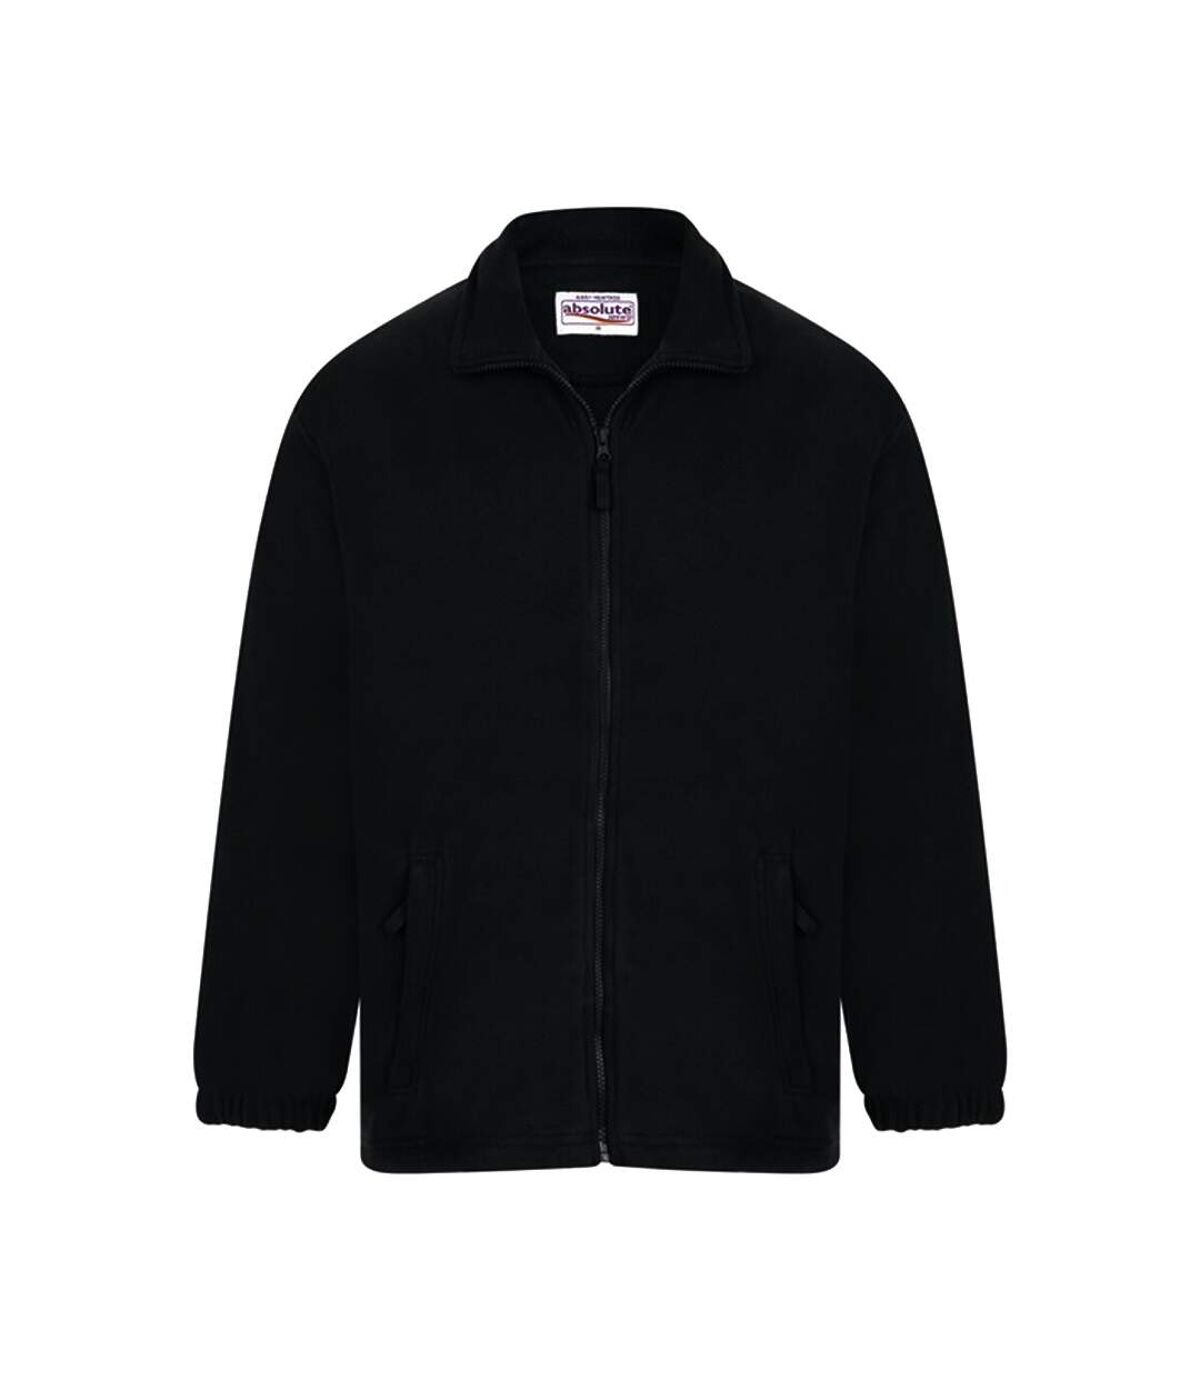 Absolute Apparel Heritage Full Zip Fleece (Black) - UTAB128